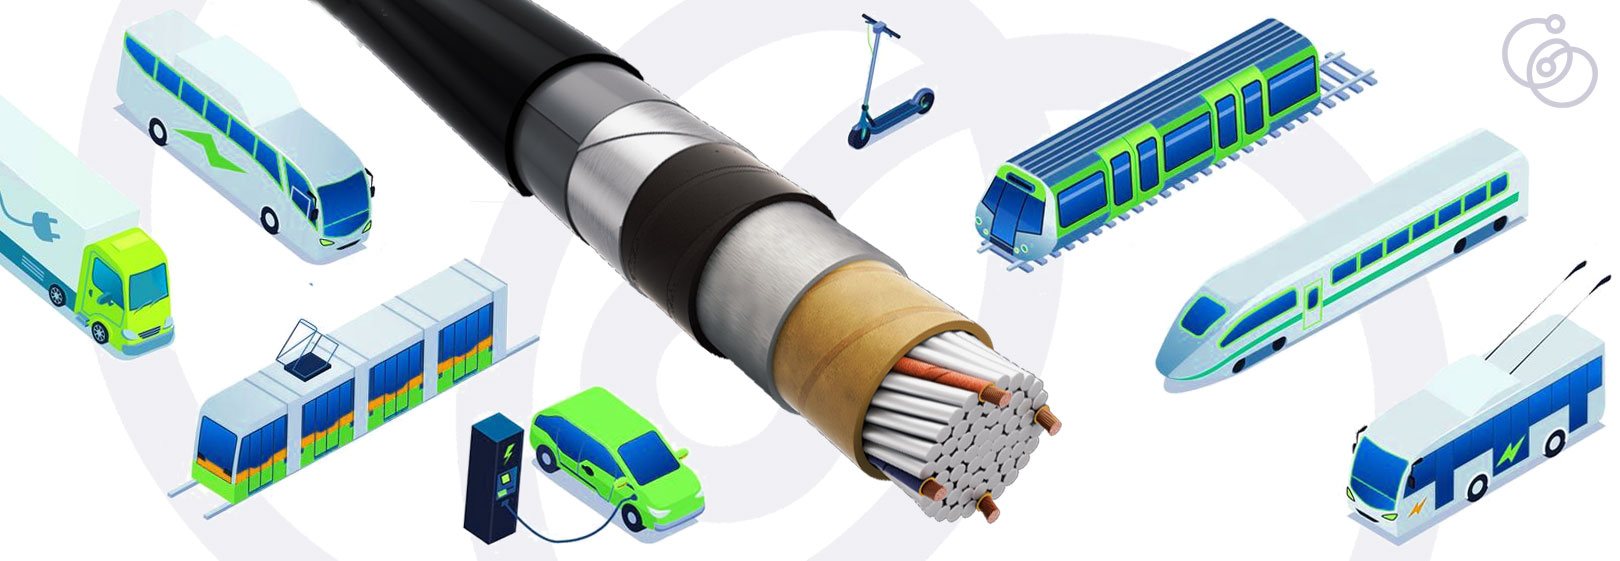 Применение кабеля марки КАСЭТ для сетей электрифицированного транспорта